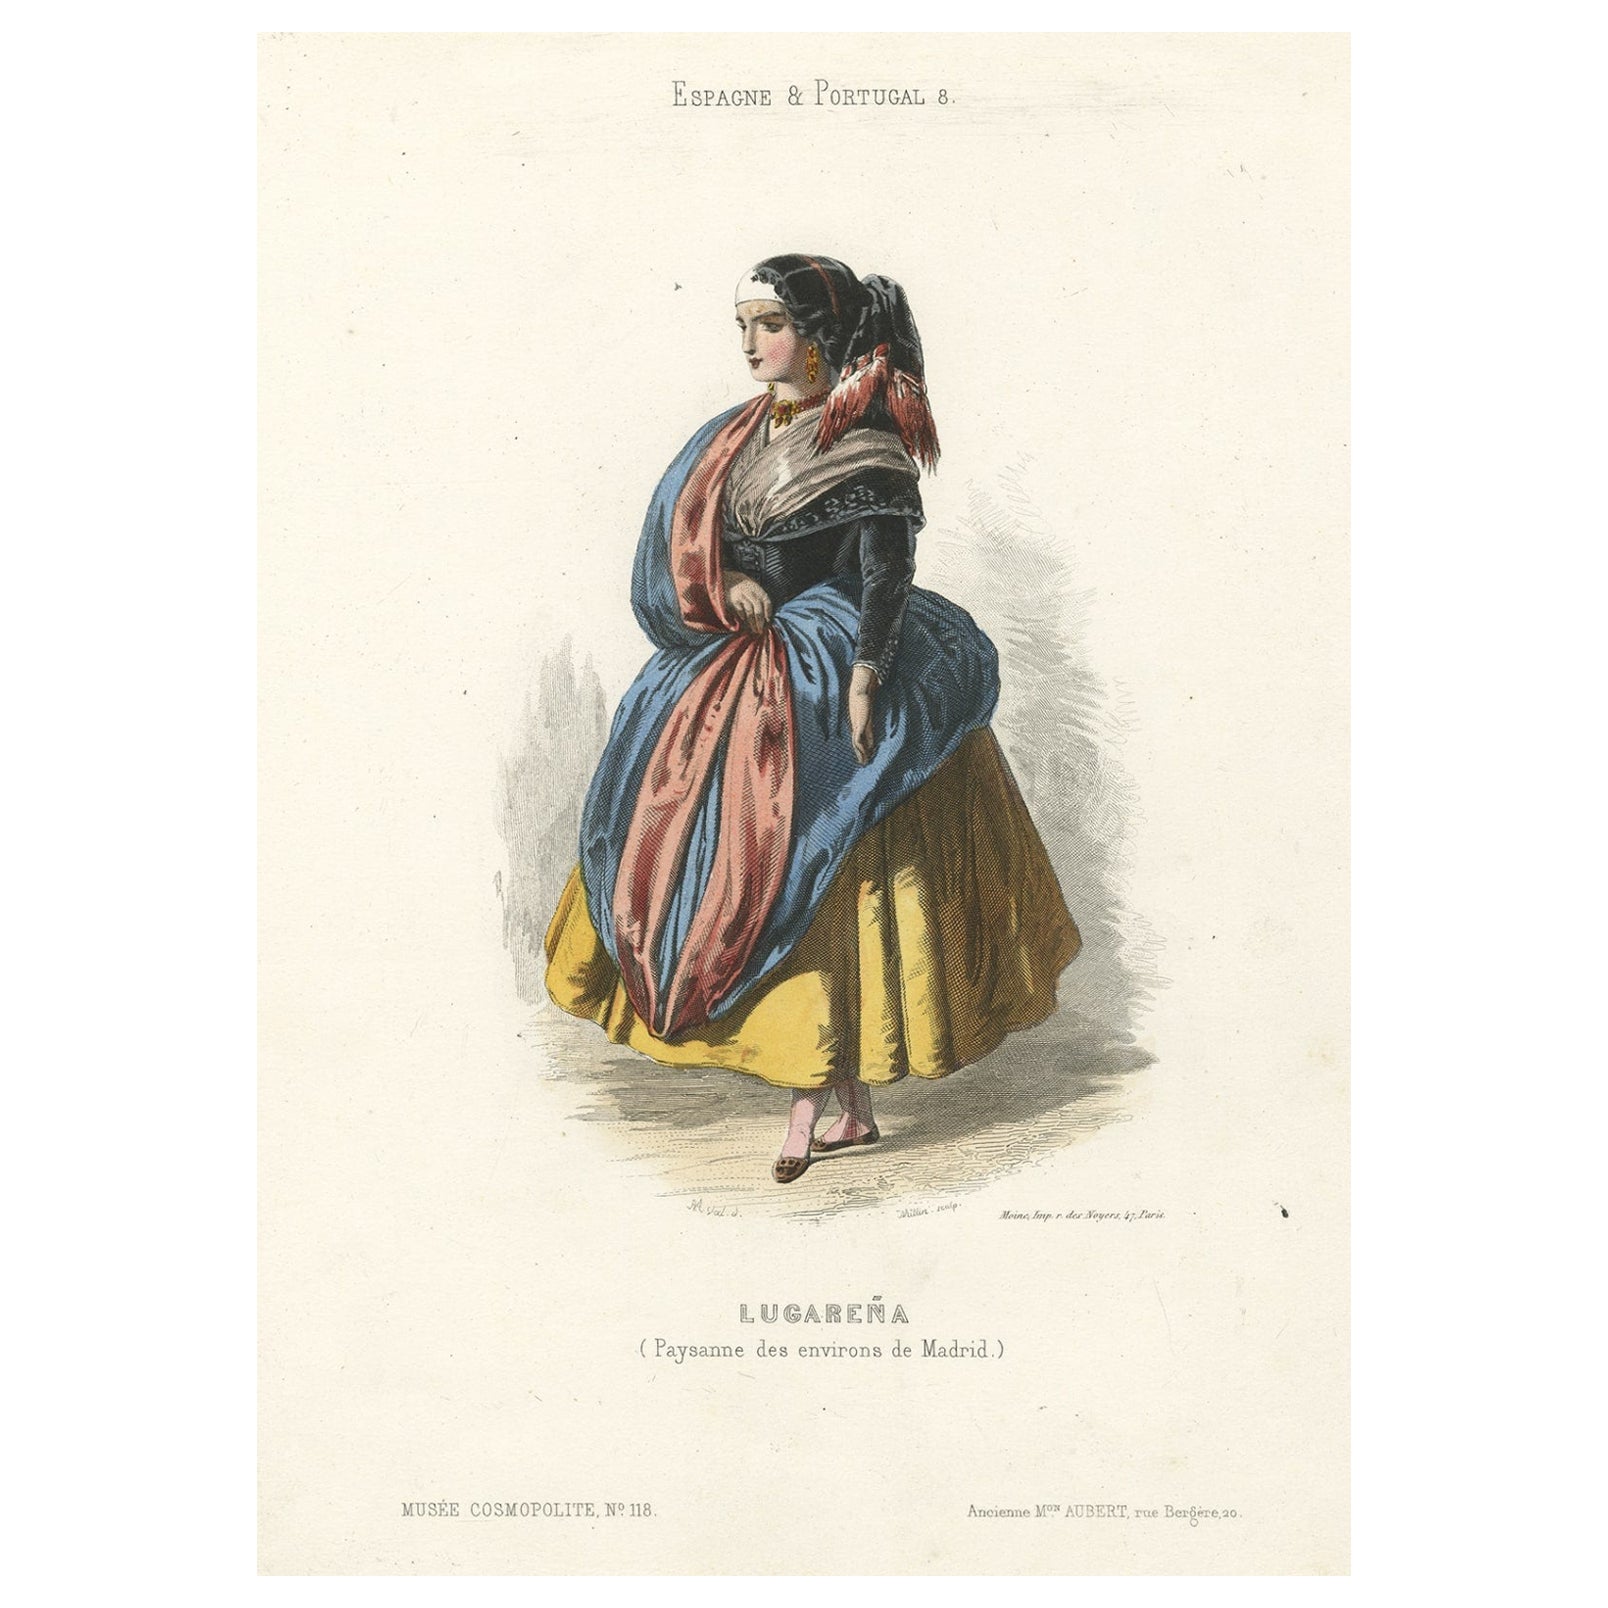 Impression colorée à la main d'une épouse fermiere de la région de Madrid, Espagne, 1850